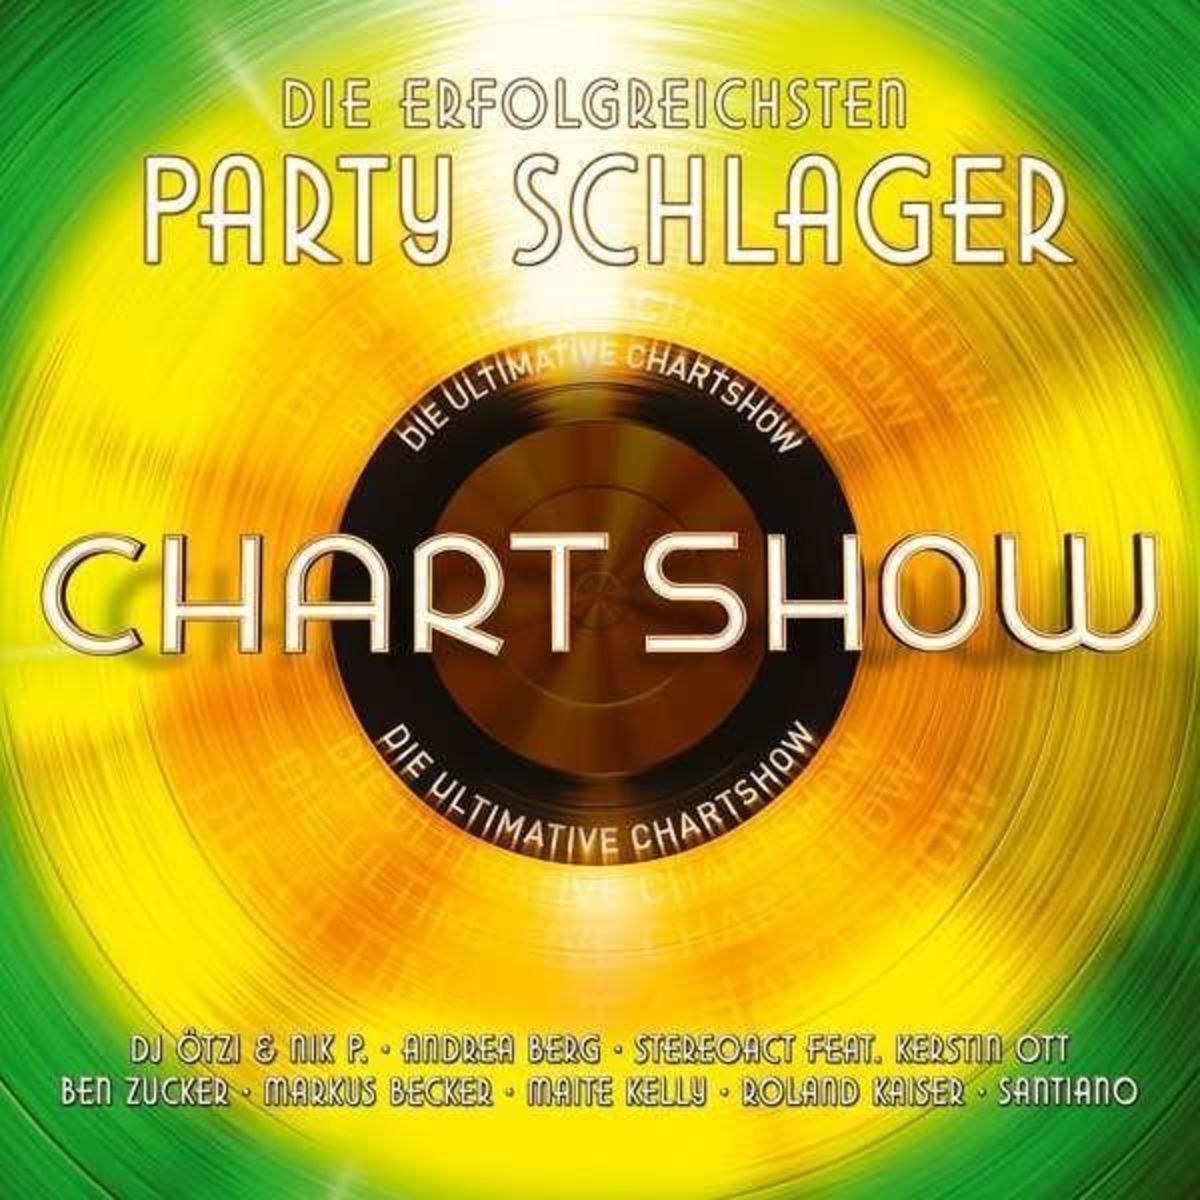 &amp;#39;Die Ultimative Chartshow-Party Schlager&amp;#39; von &amp;#39;Various Artists&amp;#39; auf &amp;#39;CD ...